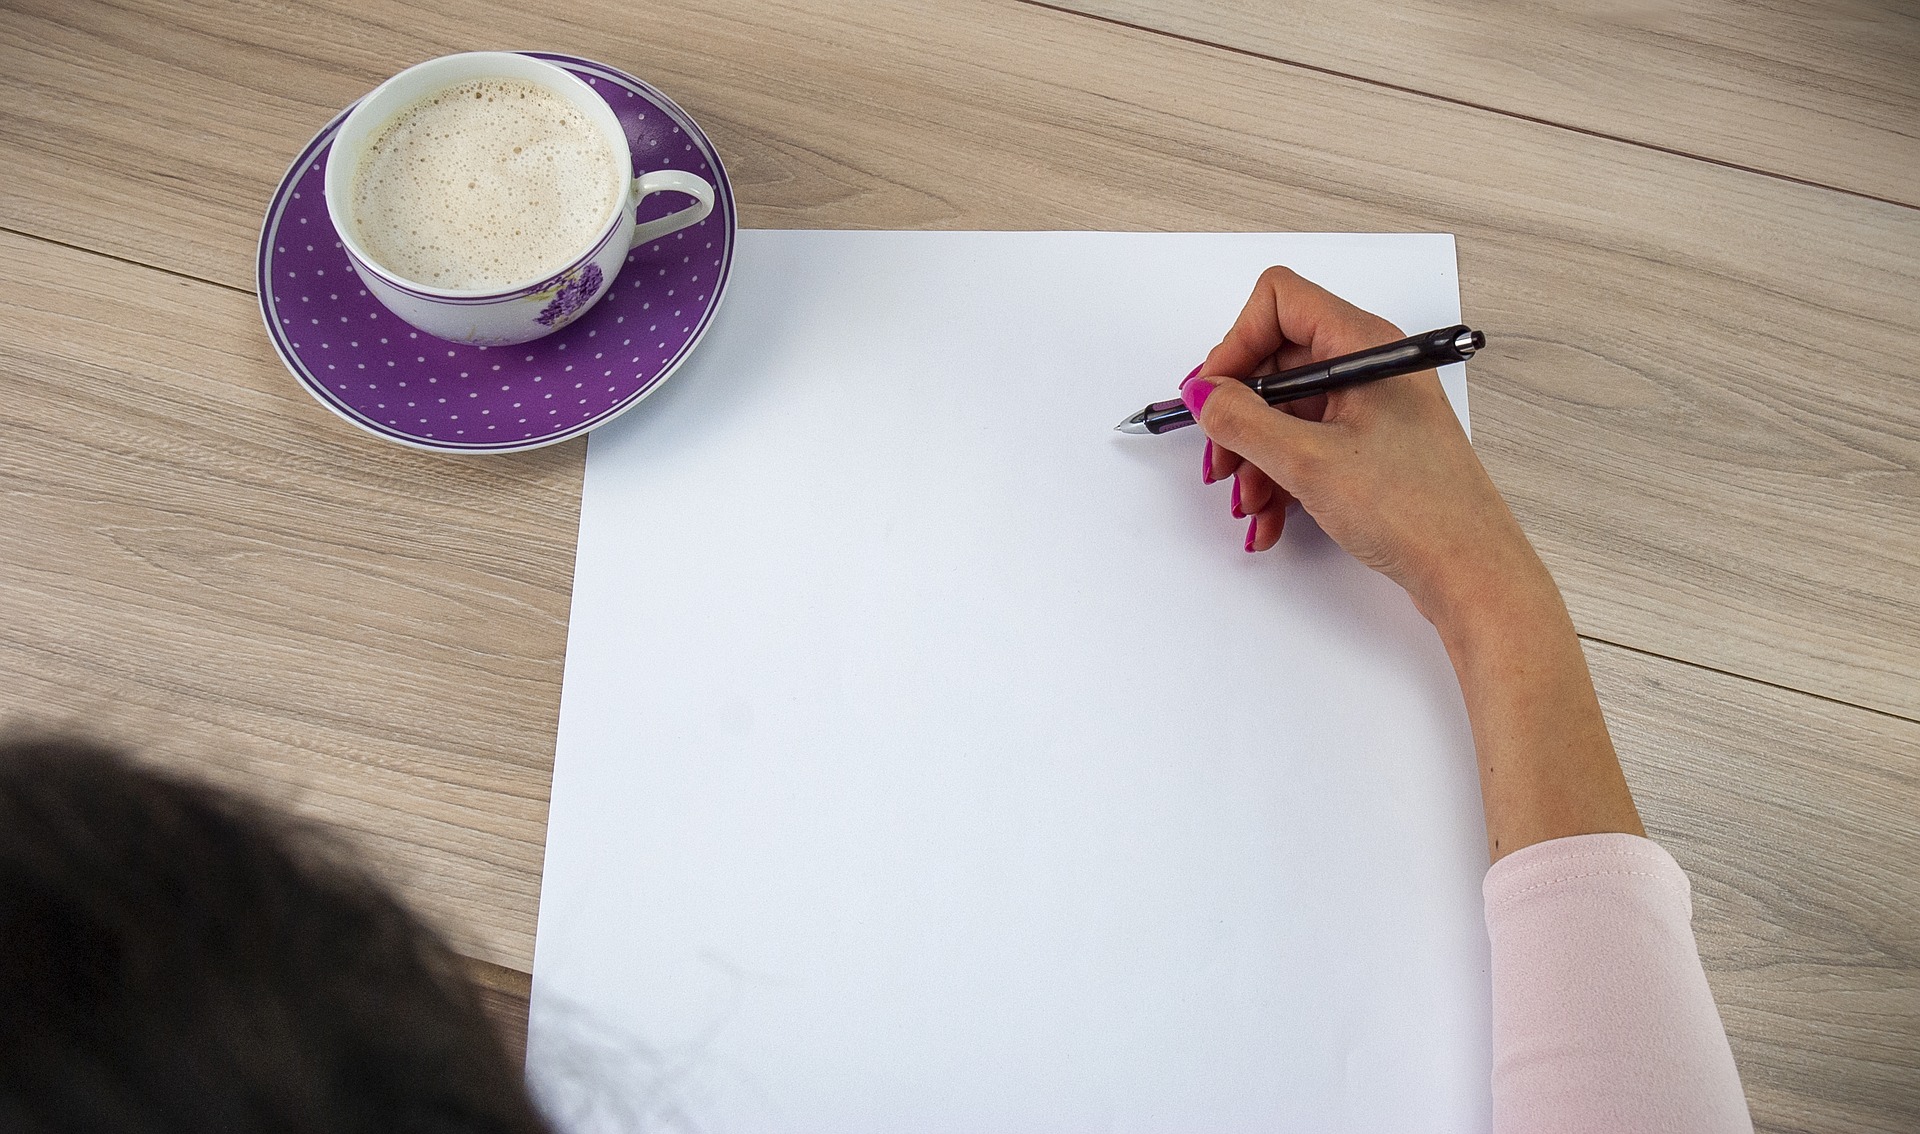 एक हाथ कागज की एक खाली शीट पर एक कलम पकड़ता है, जिसके बगल में एक कप कॉफी होती है।